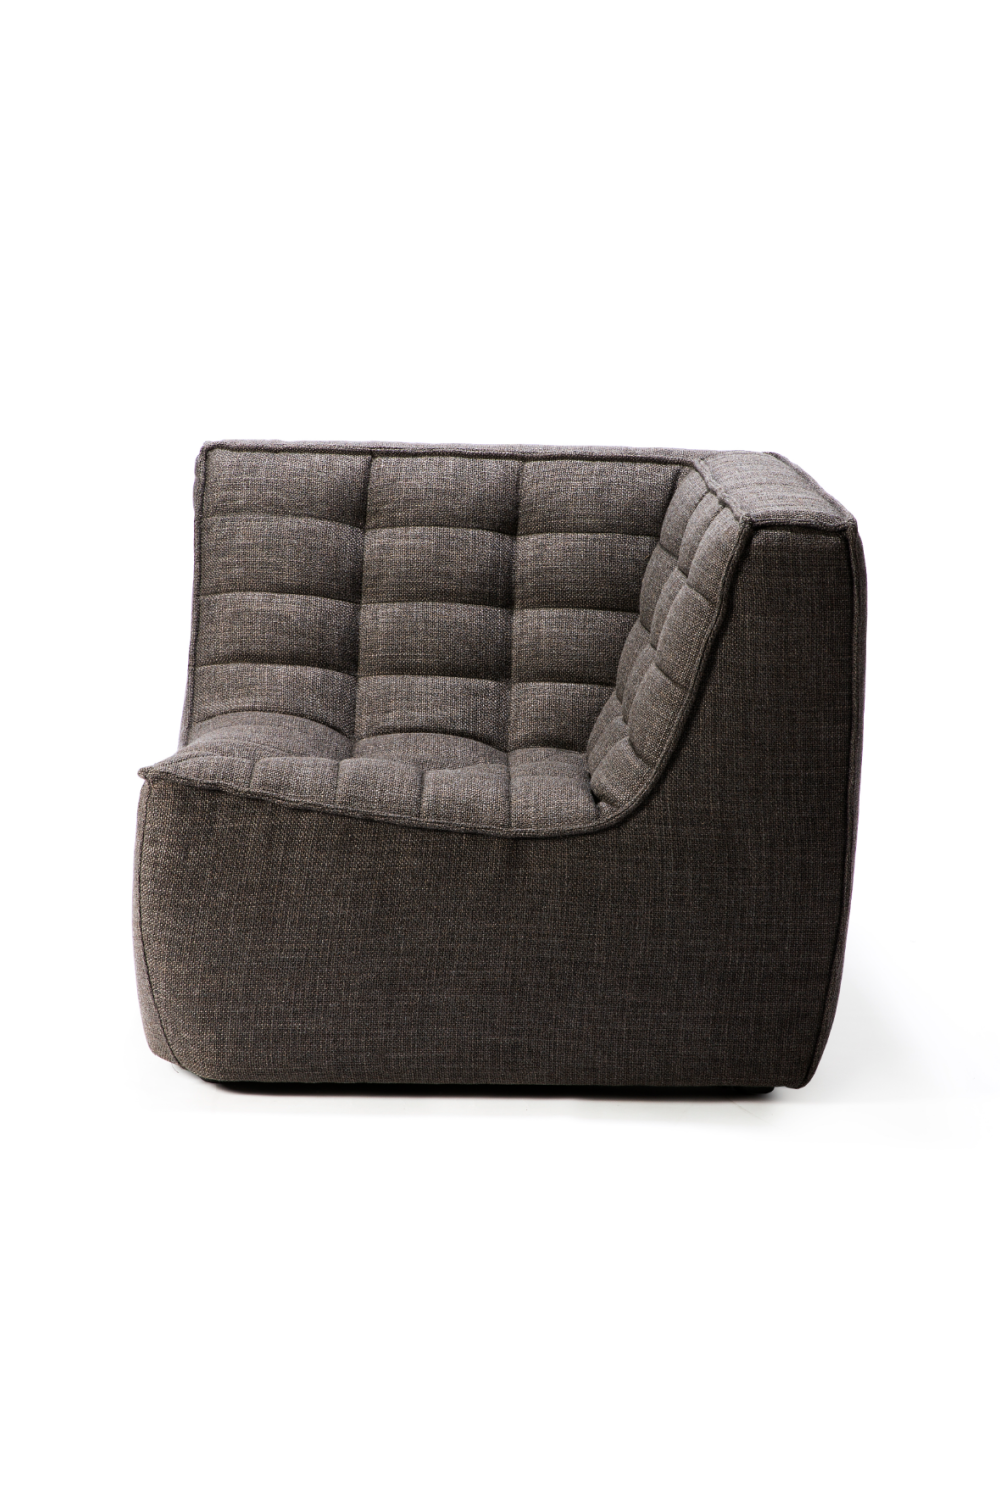 Dark Gray Modular Sofa | Ethnicraft N701 | Oroa.com